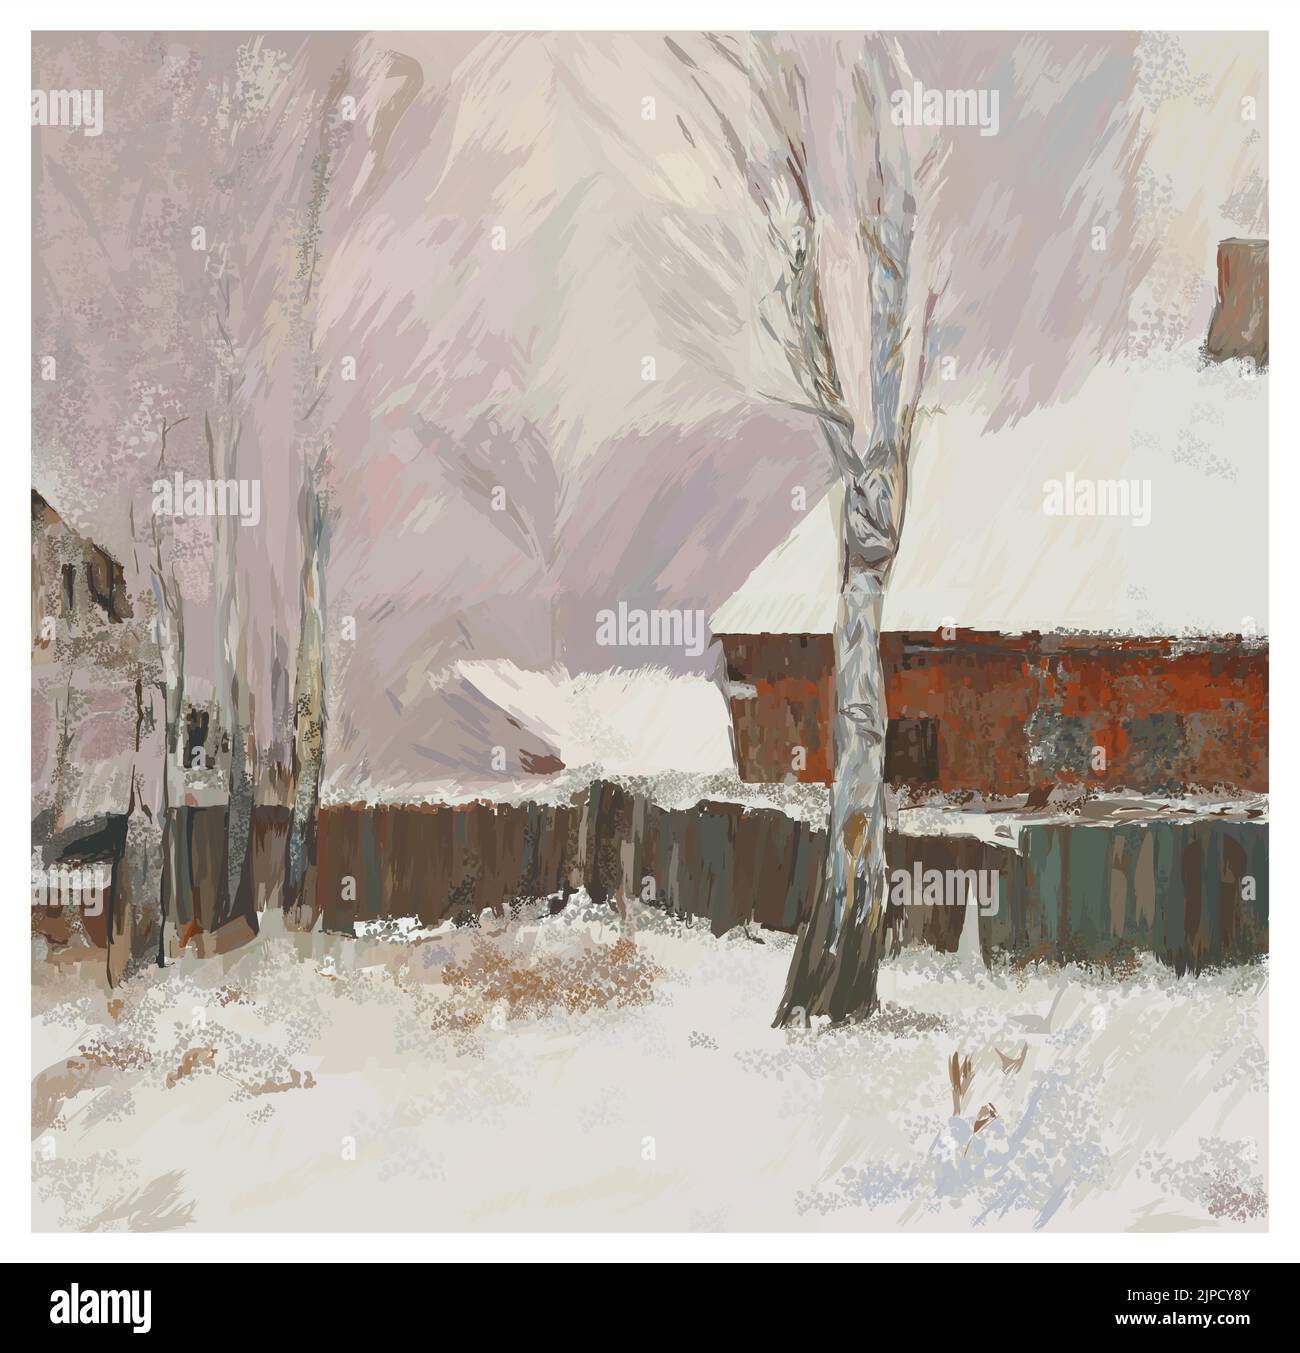 Pittura digitale originale di un paesaggio invernale nello stile di impressionista rusiano - illustrazione vettoriale (ideale per la stampa su tessuto o carta, po Illustrazione Vettoriale